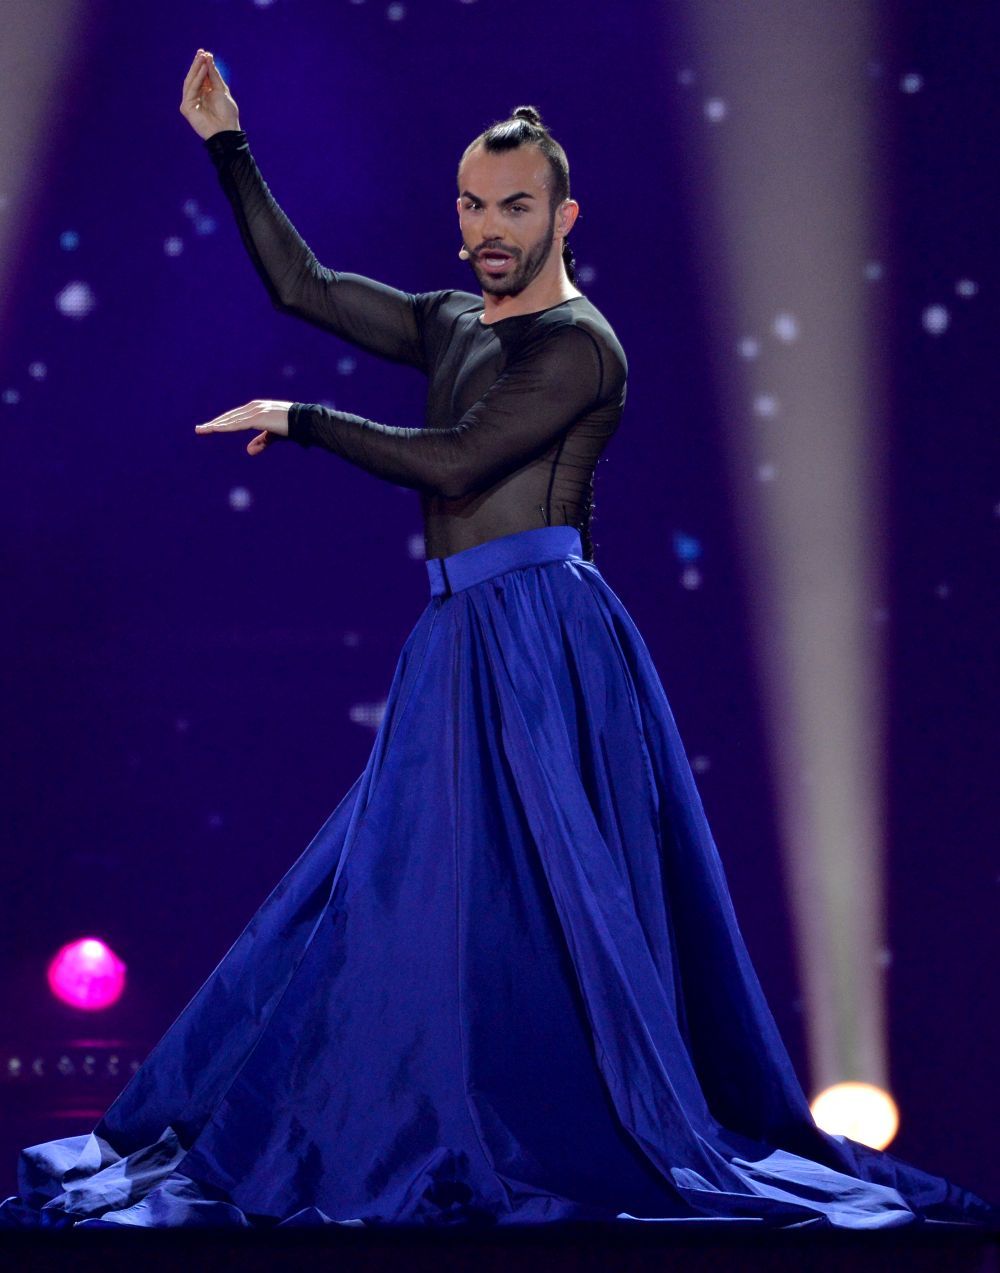 El este noua Conchita de la Eurovision. Reprezentantul din Muntenegru a facut furori intr-o fusta spectaculoasa